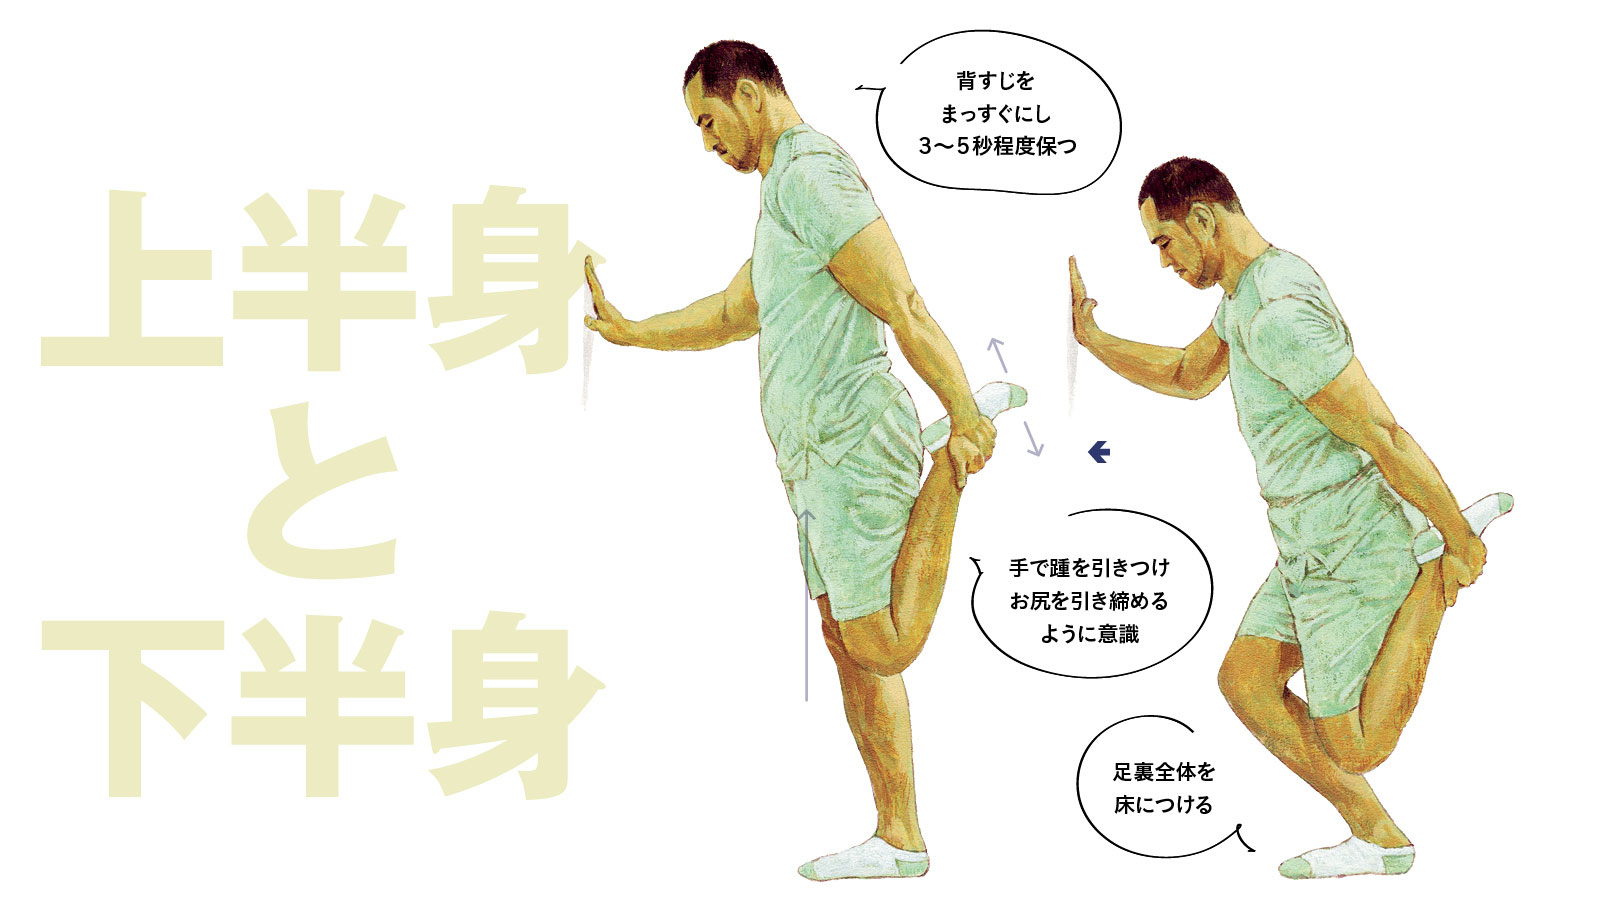 室伏広治さんのオススメ 疲労回復エクササイズ 全身の安定を高める太腿のストレッチ